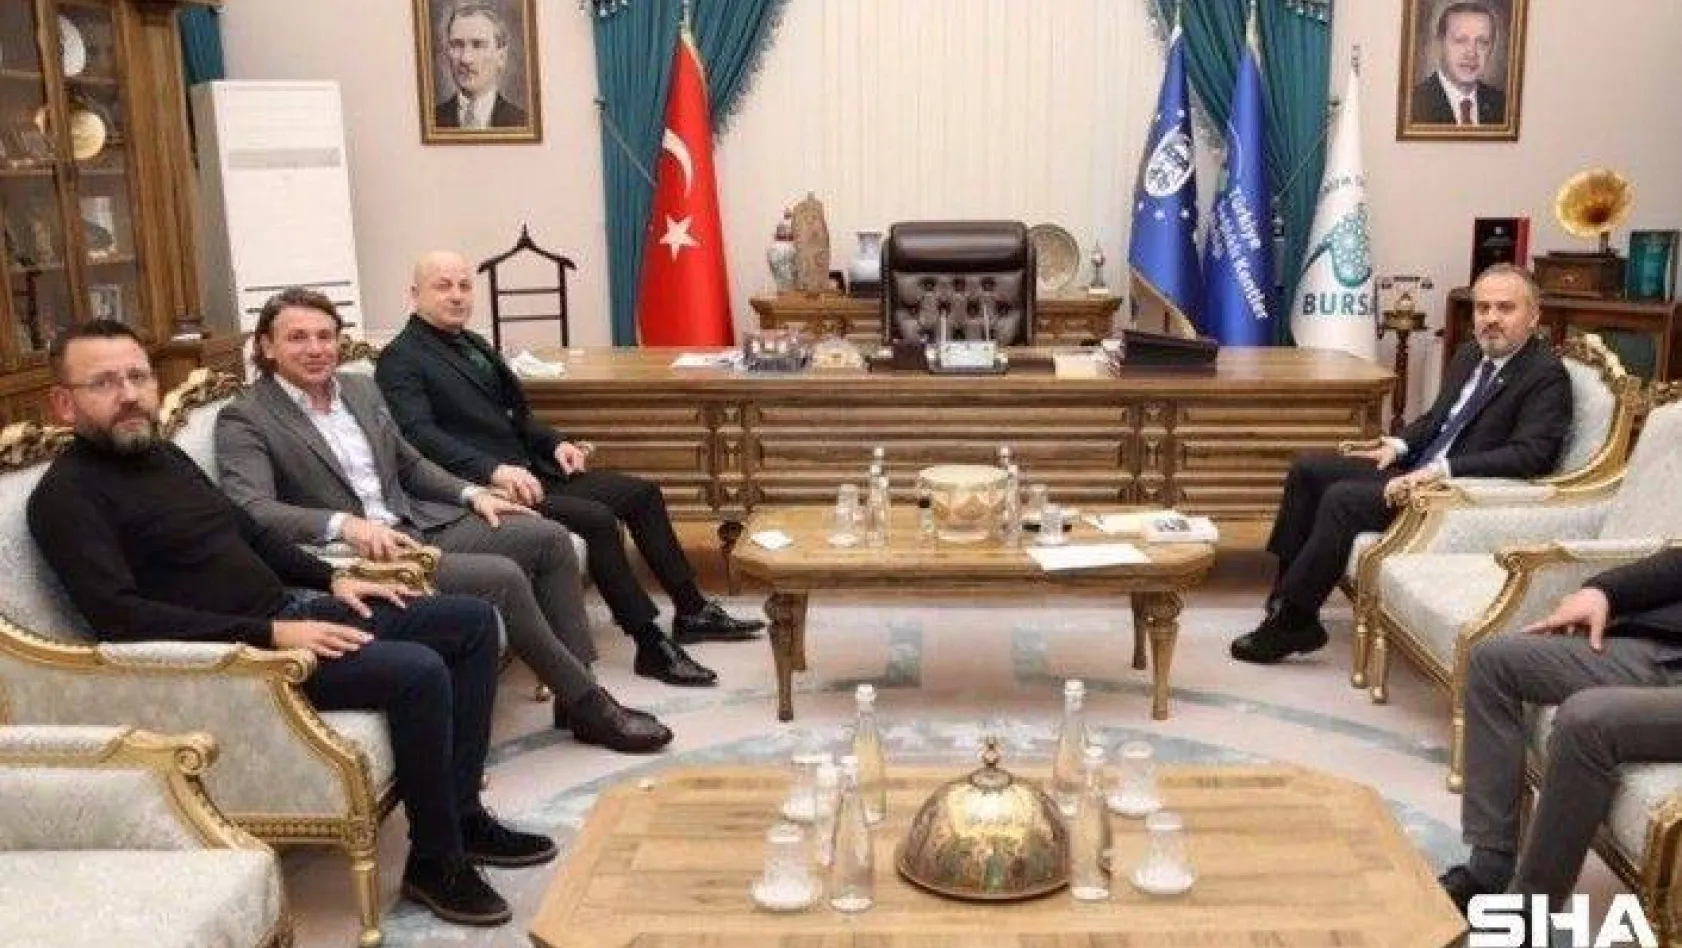 Bursaspor Kulübü, Büyükşehir Belediye Başkanı Alinur Aktaş'ı ziyaret etti